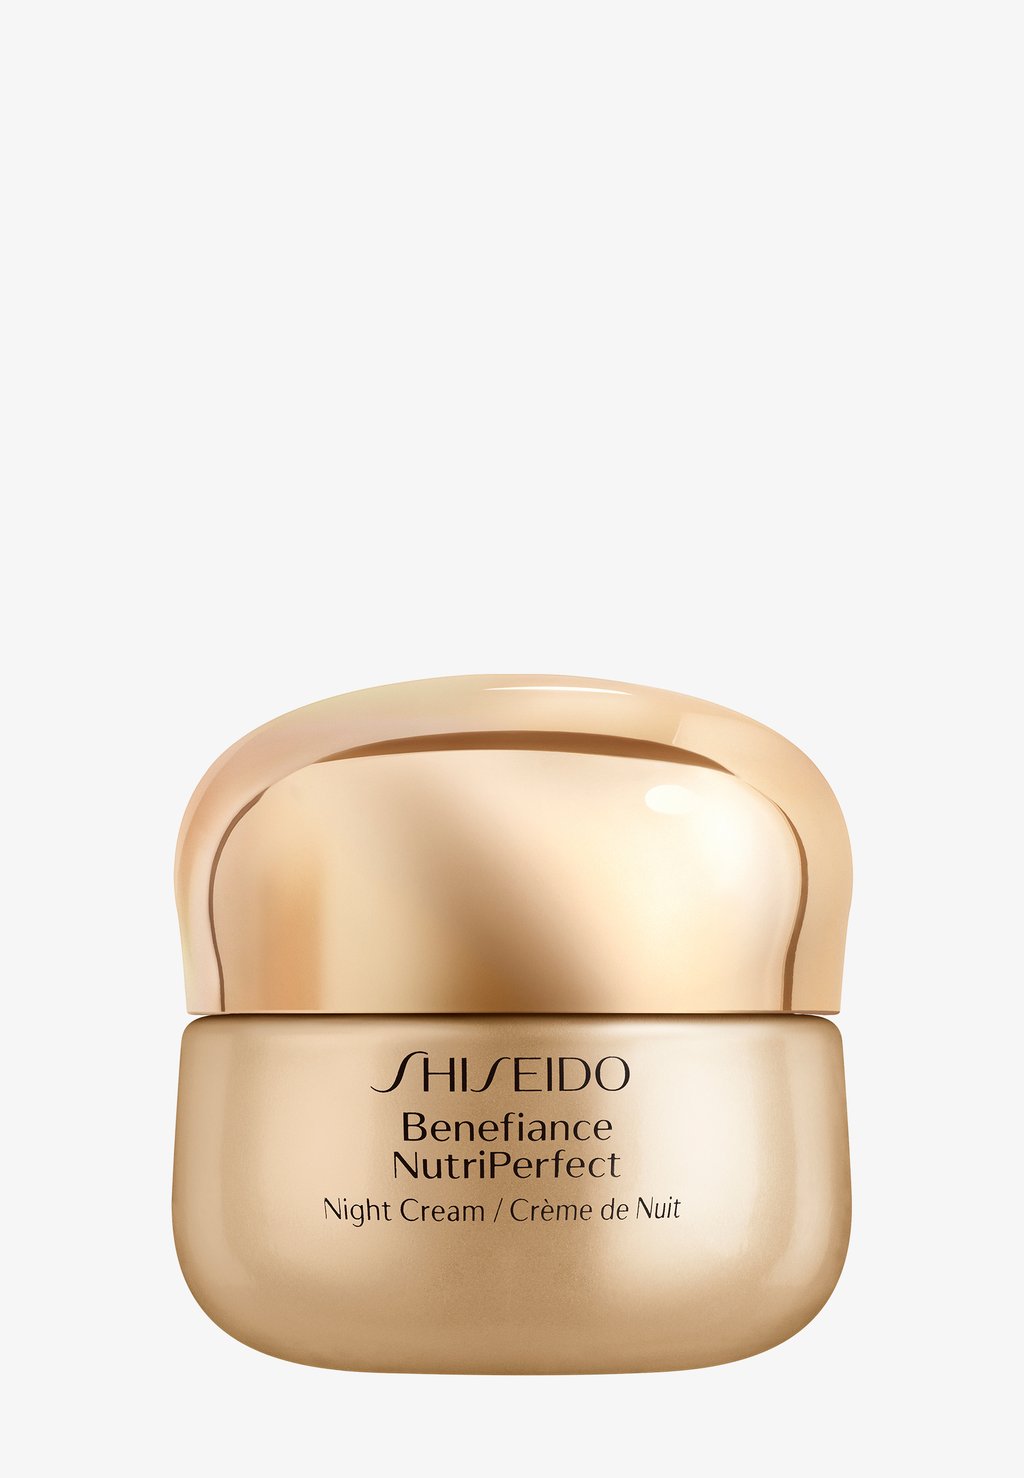 Ночные процедуры Benefiance Nutriperfect Ночной Крем 50 Мл Shiseido ночной крем shiseido benefiance nutriperfect night cream 50